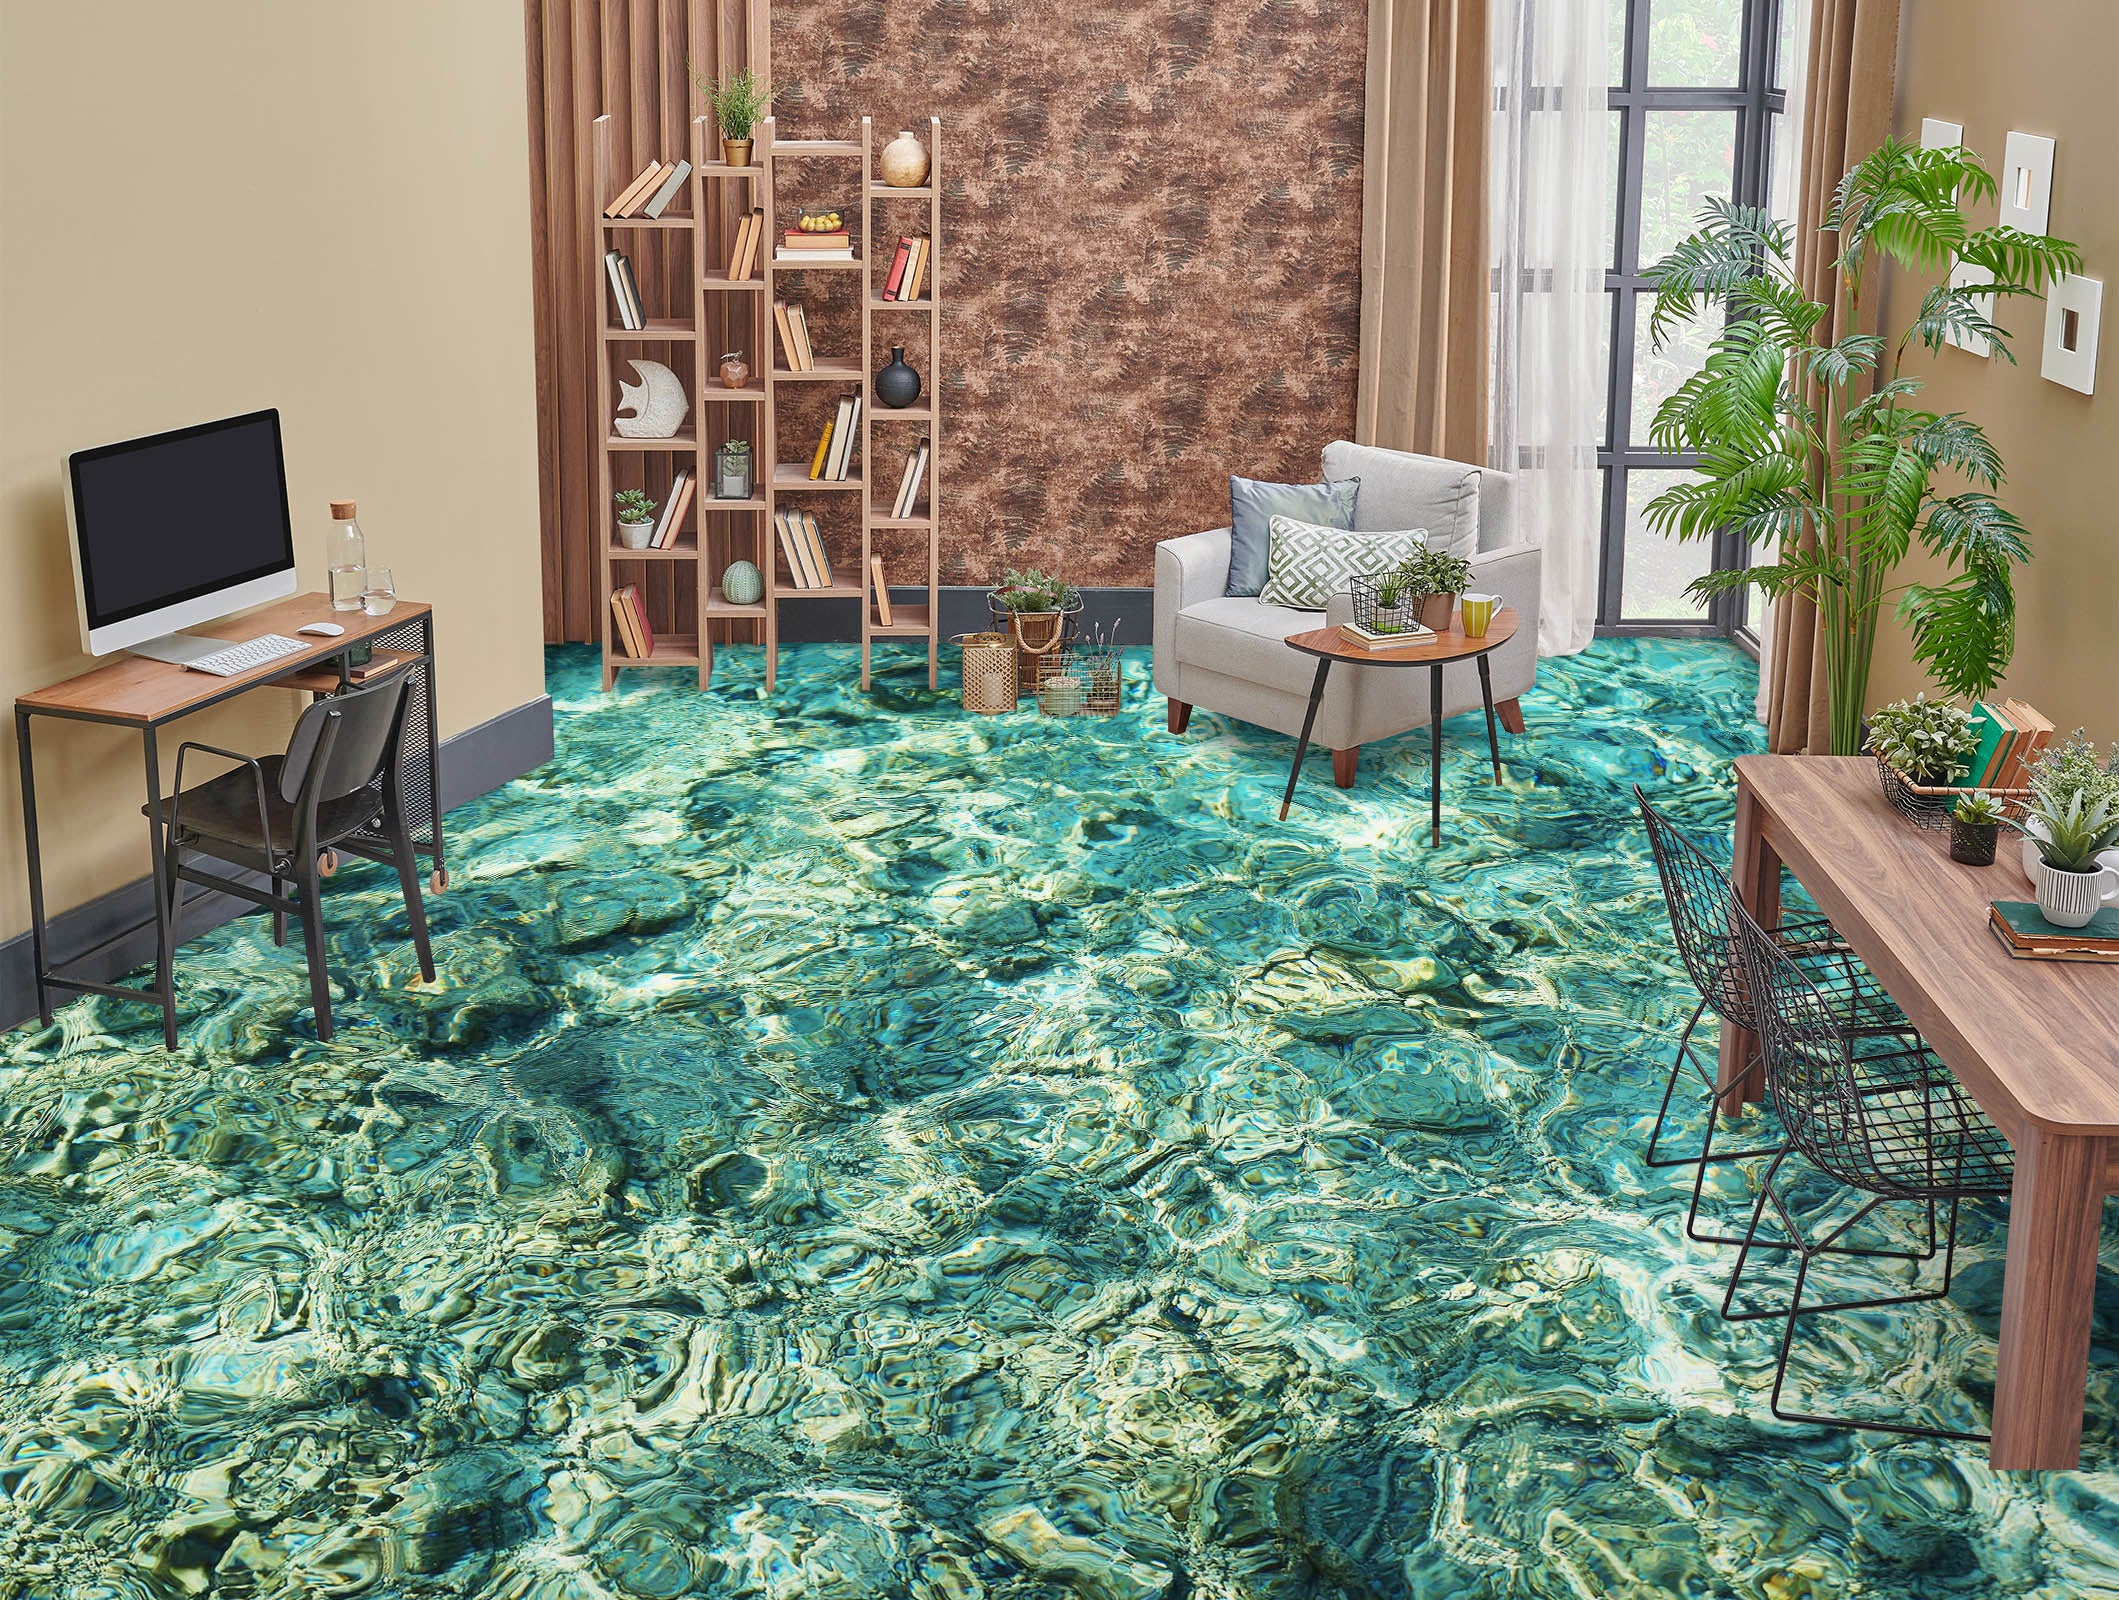 3D Art Green Sea 324 Floor Mural  Wallpaper Murals Rug & Mat Print Epoxy waterproof bath floor